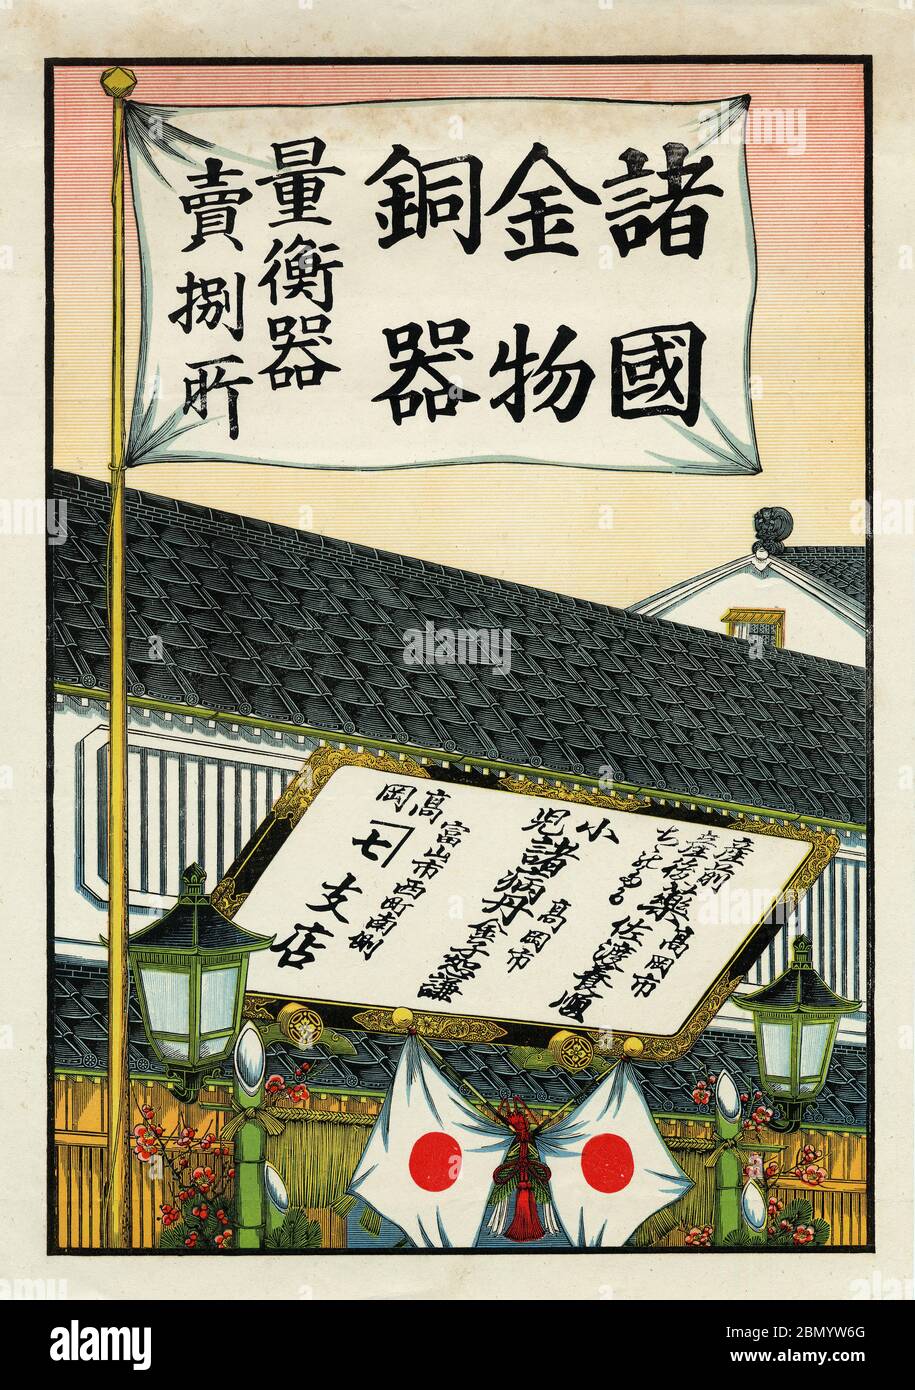 [ 1920 Giappone - Poster pubblicitario giapponese ] - Hikifuda (引札), una stampa utilizzata come volantino pubblicitario dai negozi locali. Erano popolari dal 1800 fino agli anni 1920. Questa stampa mostra un negozio con due bandiere giapponesi. volantino pubblicitario vintage del xx secolo. Foto Stock